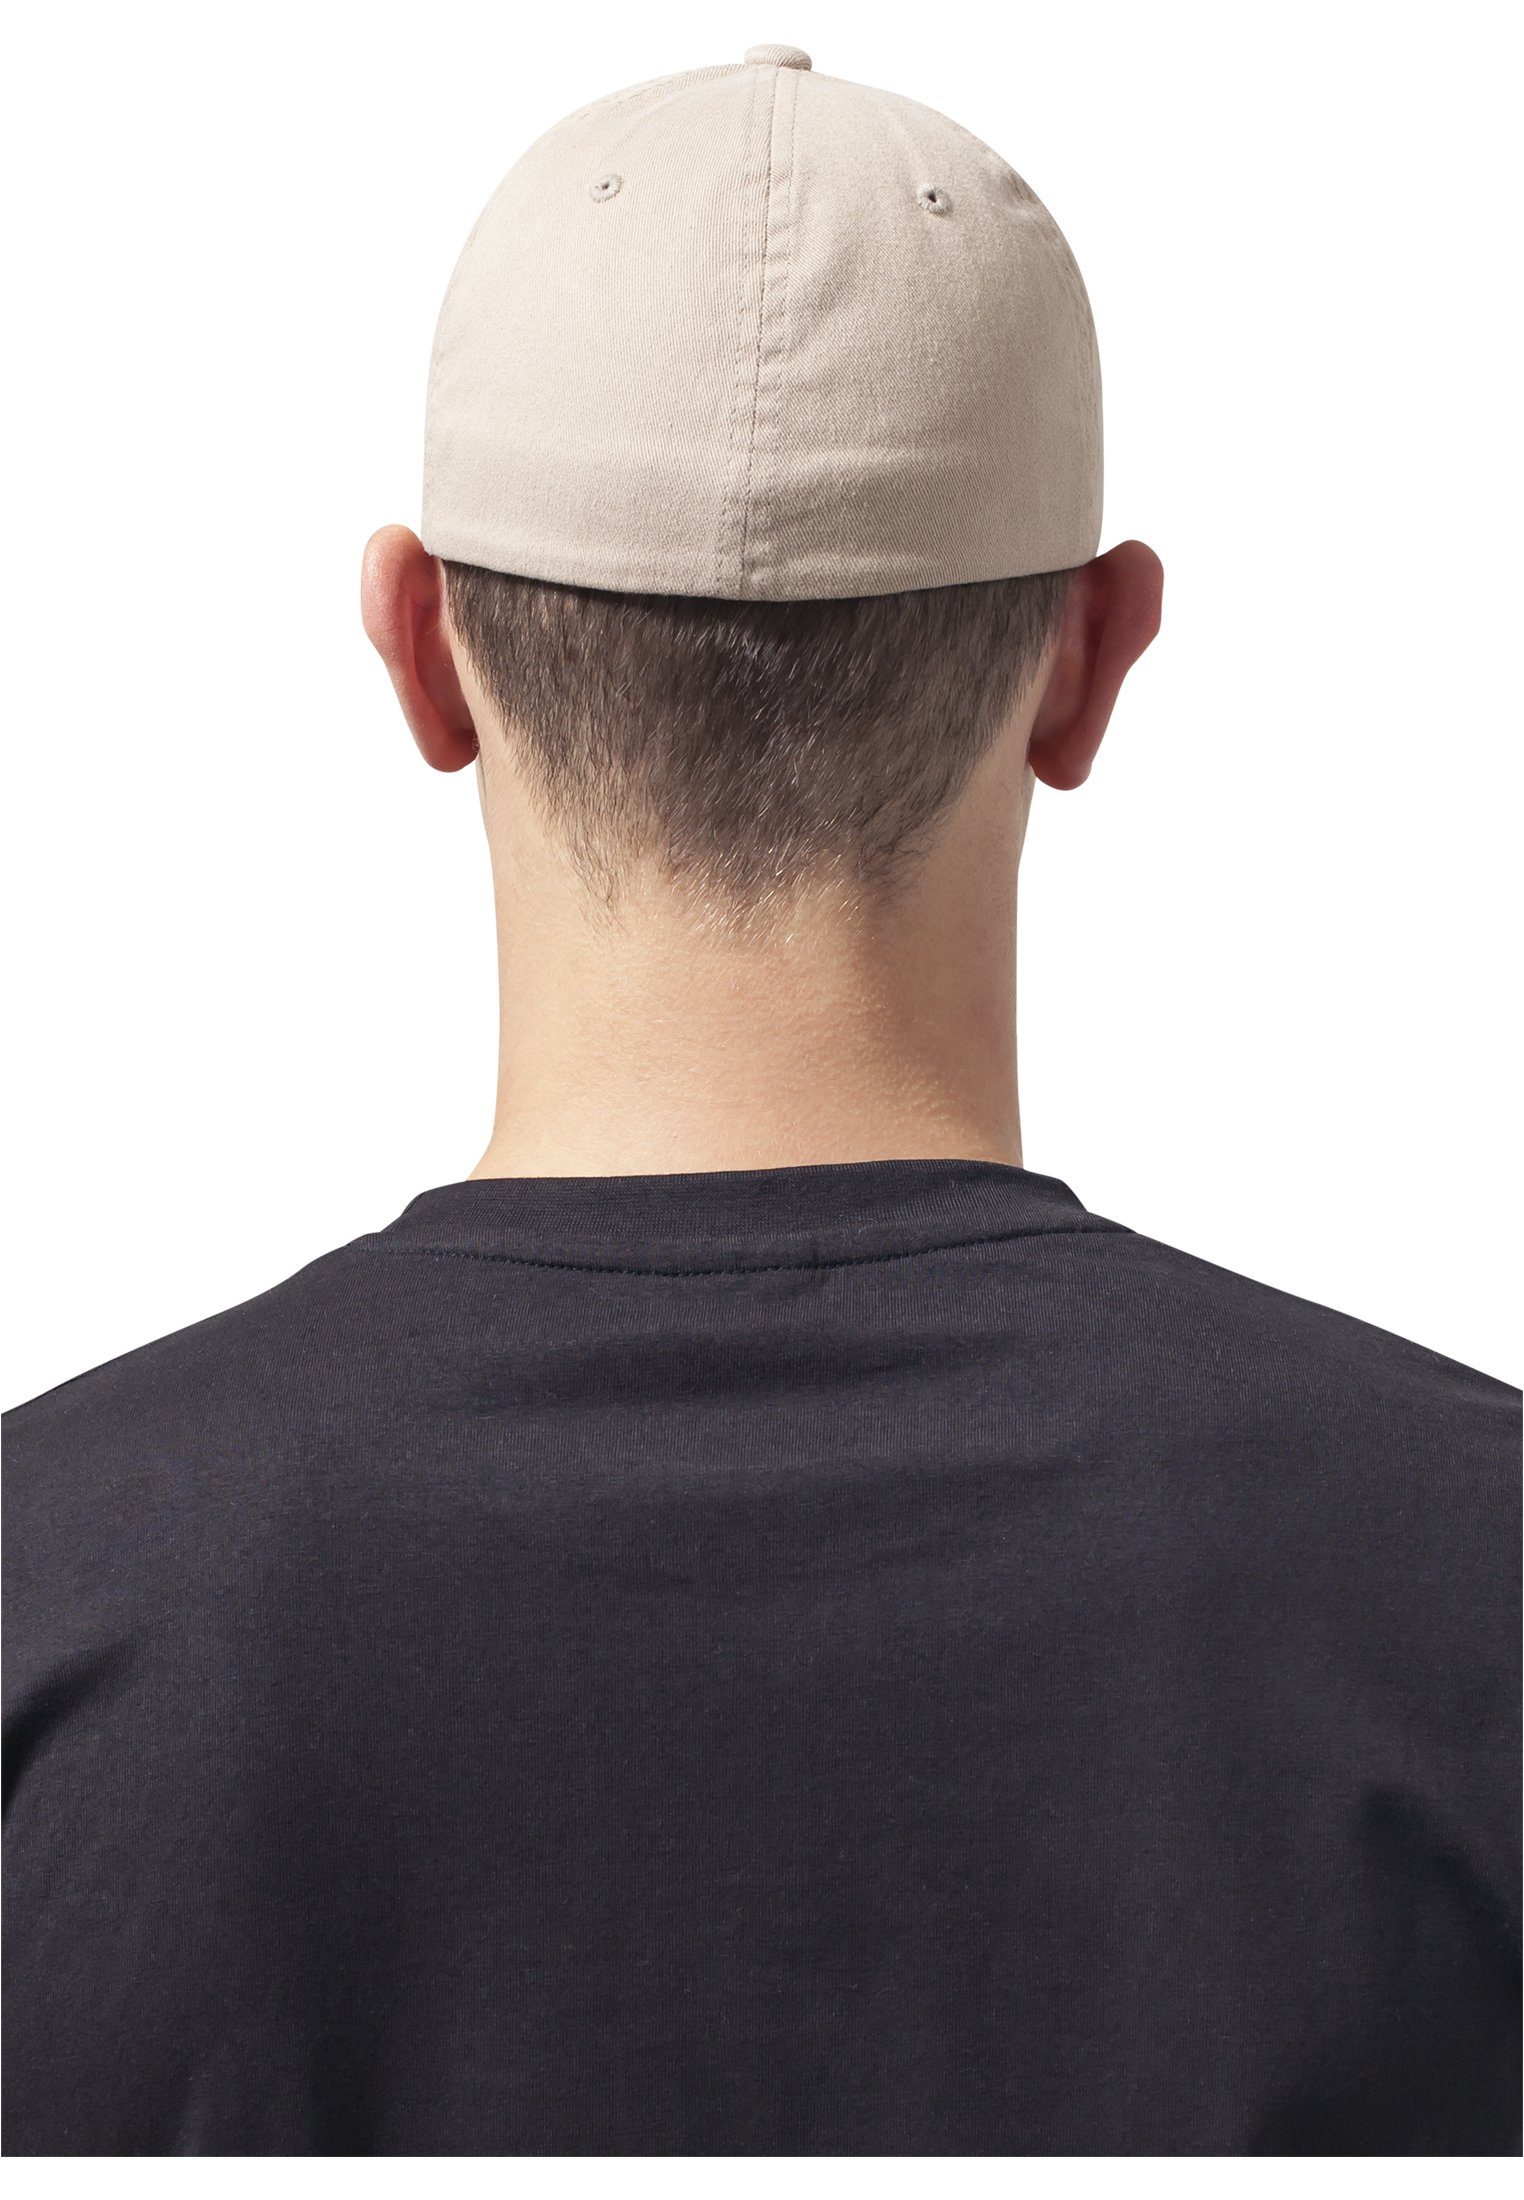 Washed Flexfit Accessoires Flexfit Dad Cotton Garment khaki Cap Flex Hat